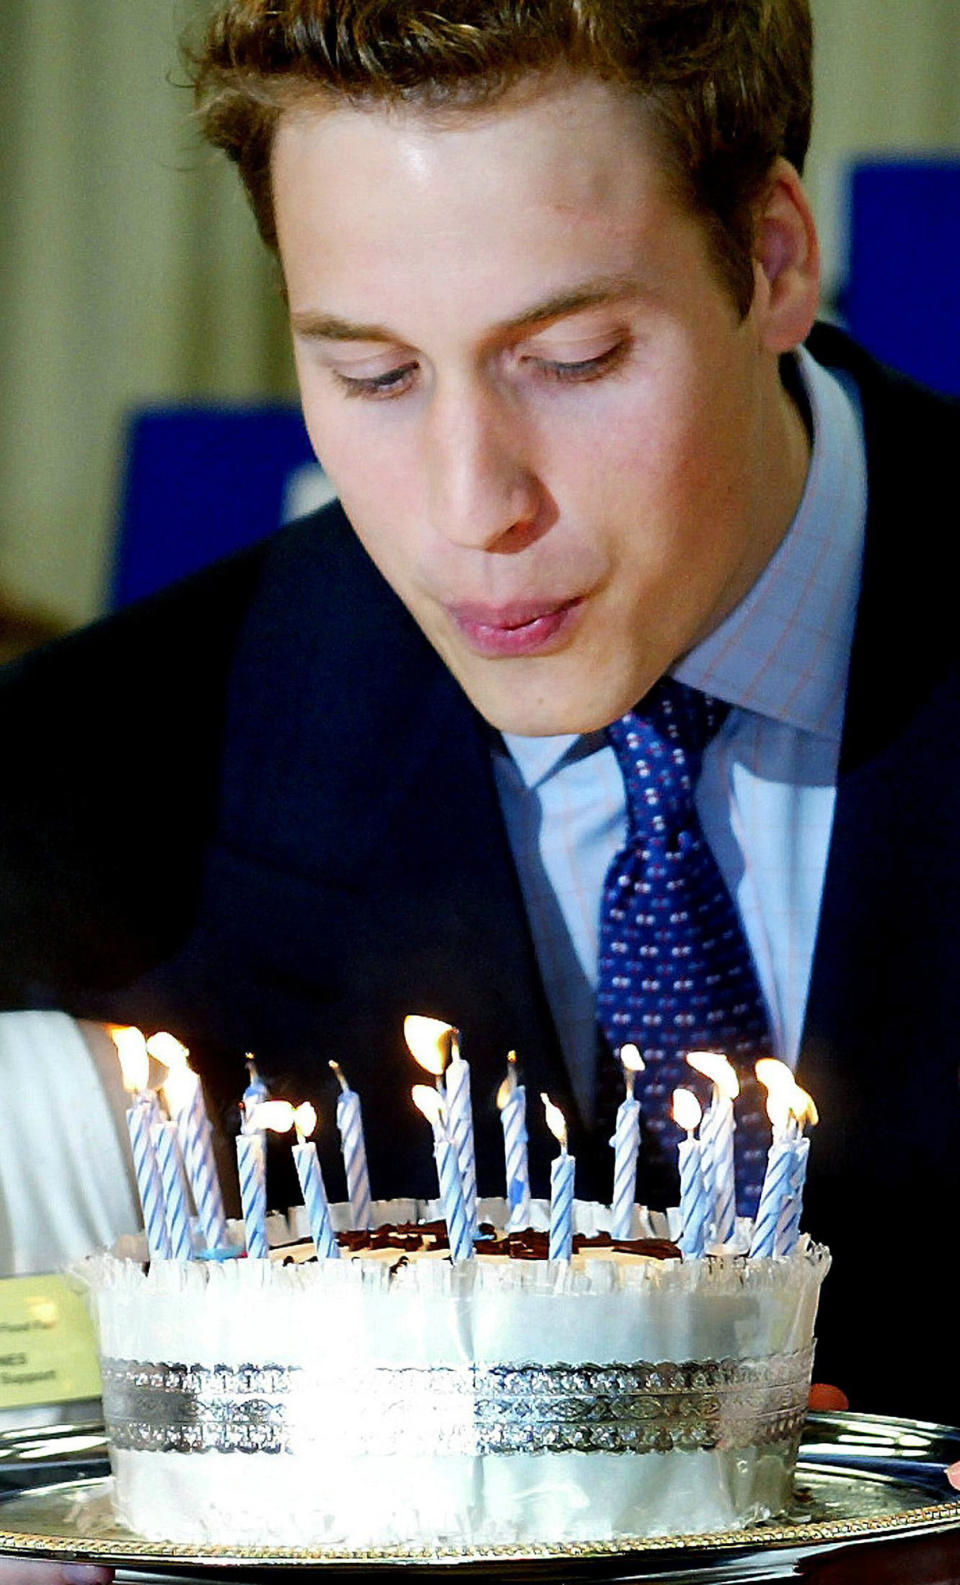 ARCHIVO - El príncipe Guillermo de Gran Bretaña sopla las velas de un pastel de cumpleaños el 19 de junio de 2003 durante una visita a la Feria de Comida de Anglesey en el norte de Gales. (Ian Hodgson/Pool Photo vía AP, archivo)